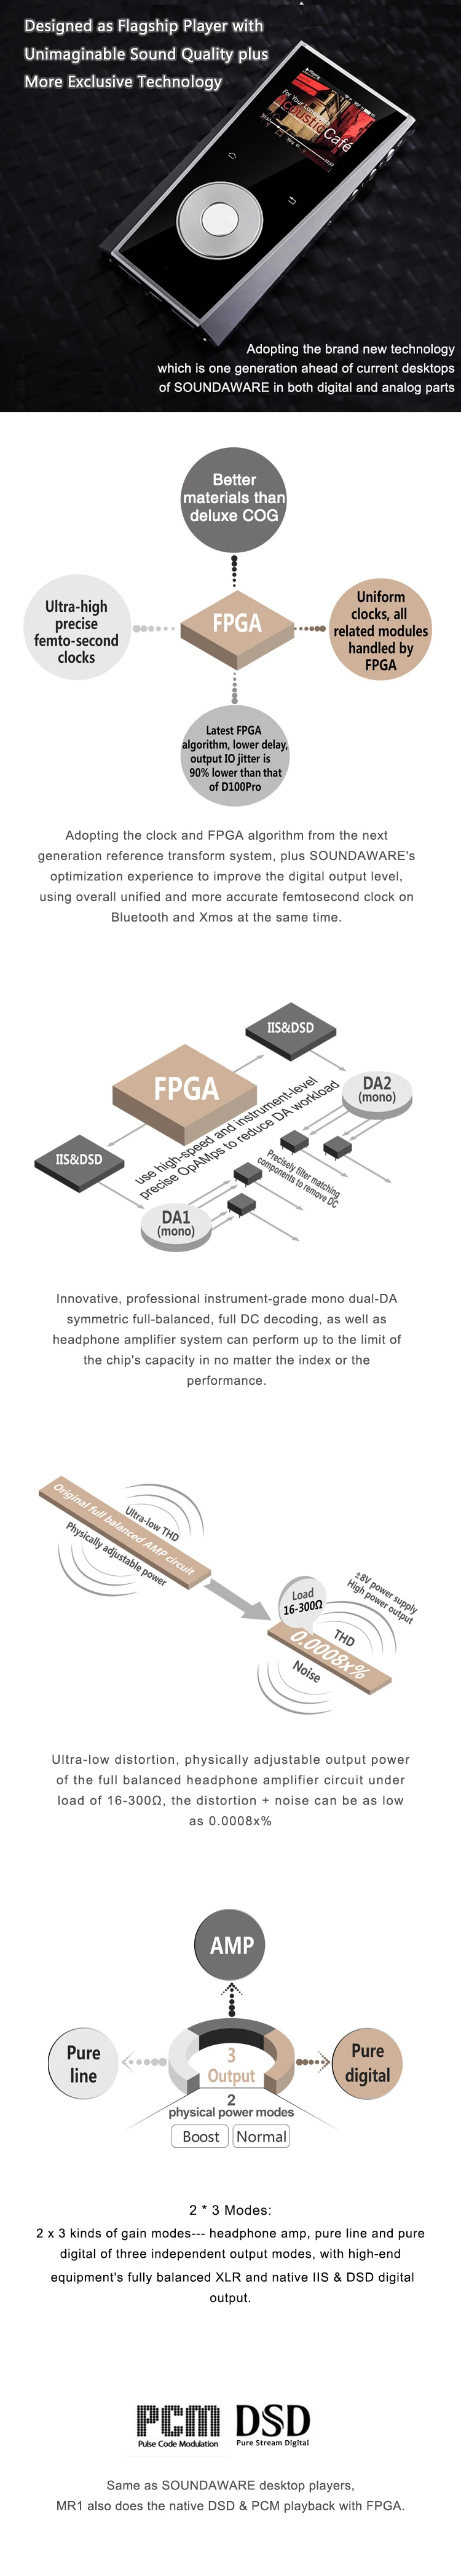 Soundaware MR1 флагманский Беспроводной сети мобильный музыкальный плеер Bluetooth обмена потоковыми мультимедийными данными(AirPlay) Usb DAC полный сцена приложения